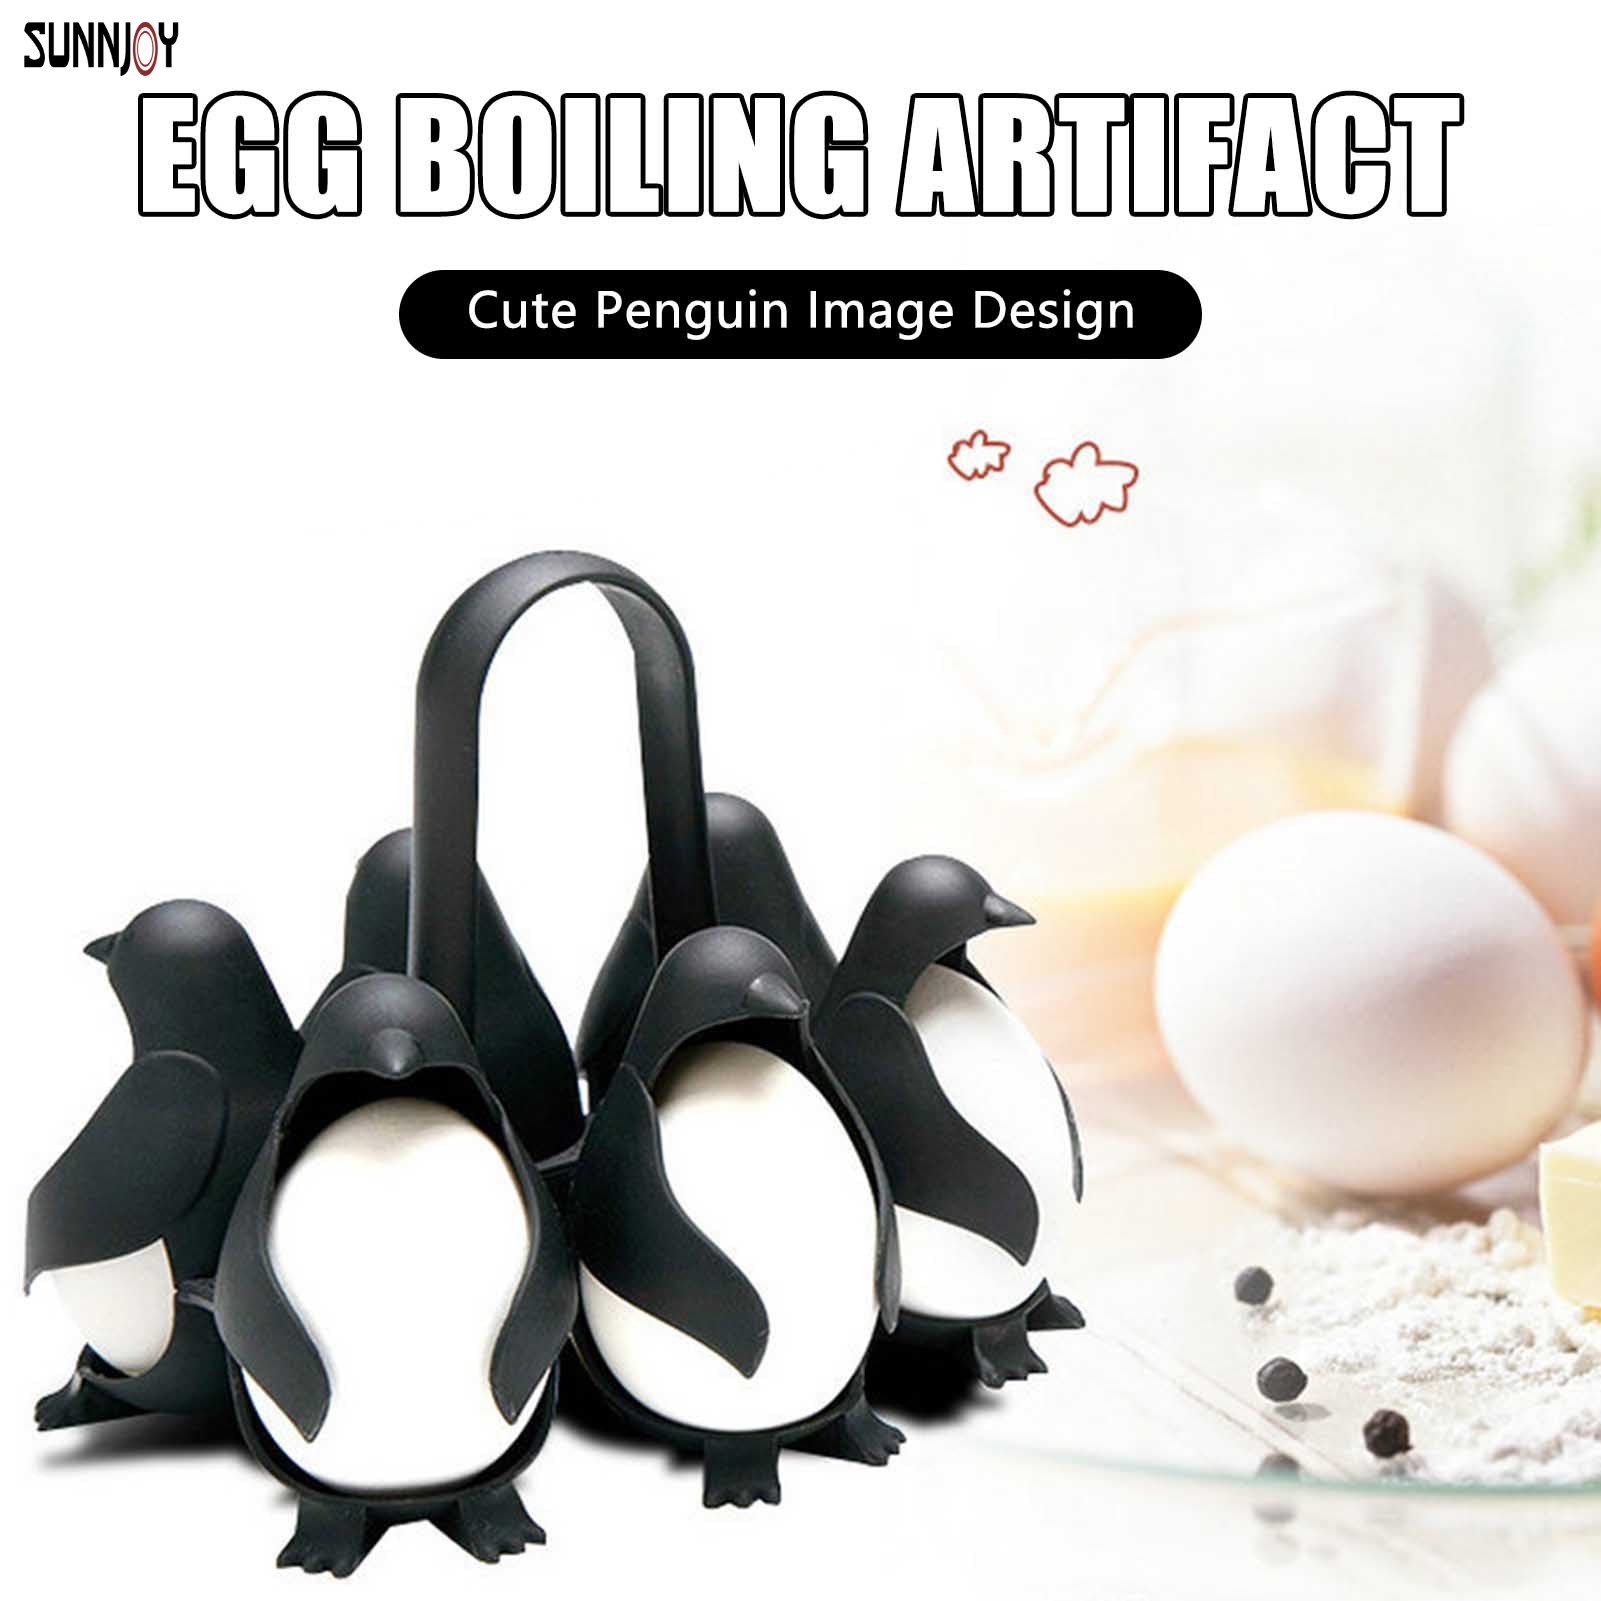 Penguin-Shaped Boiled Egg Cooker Making Soft or Hard Boiled Eggs